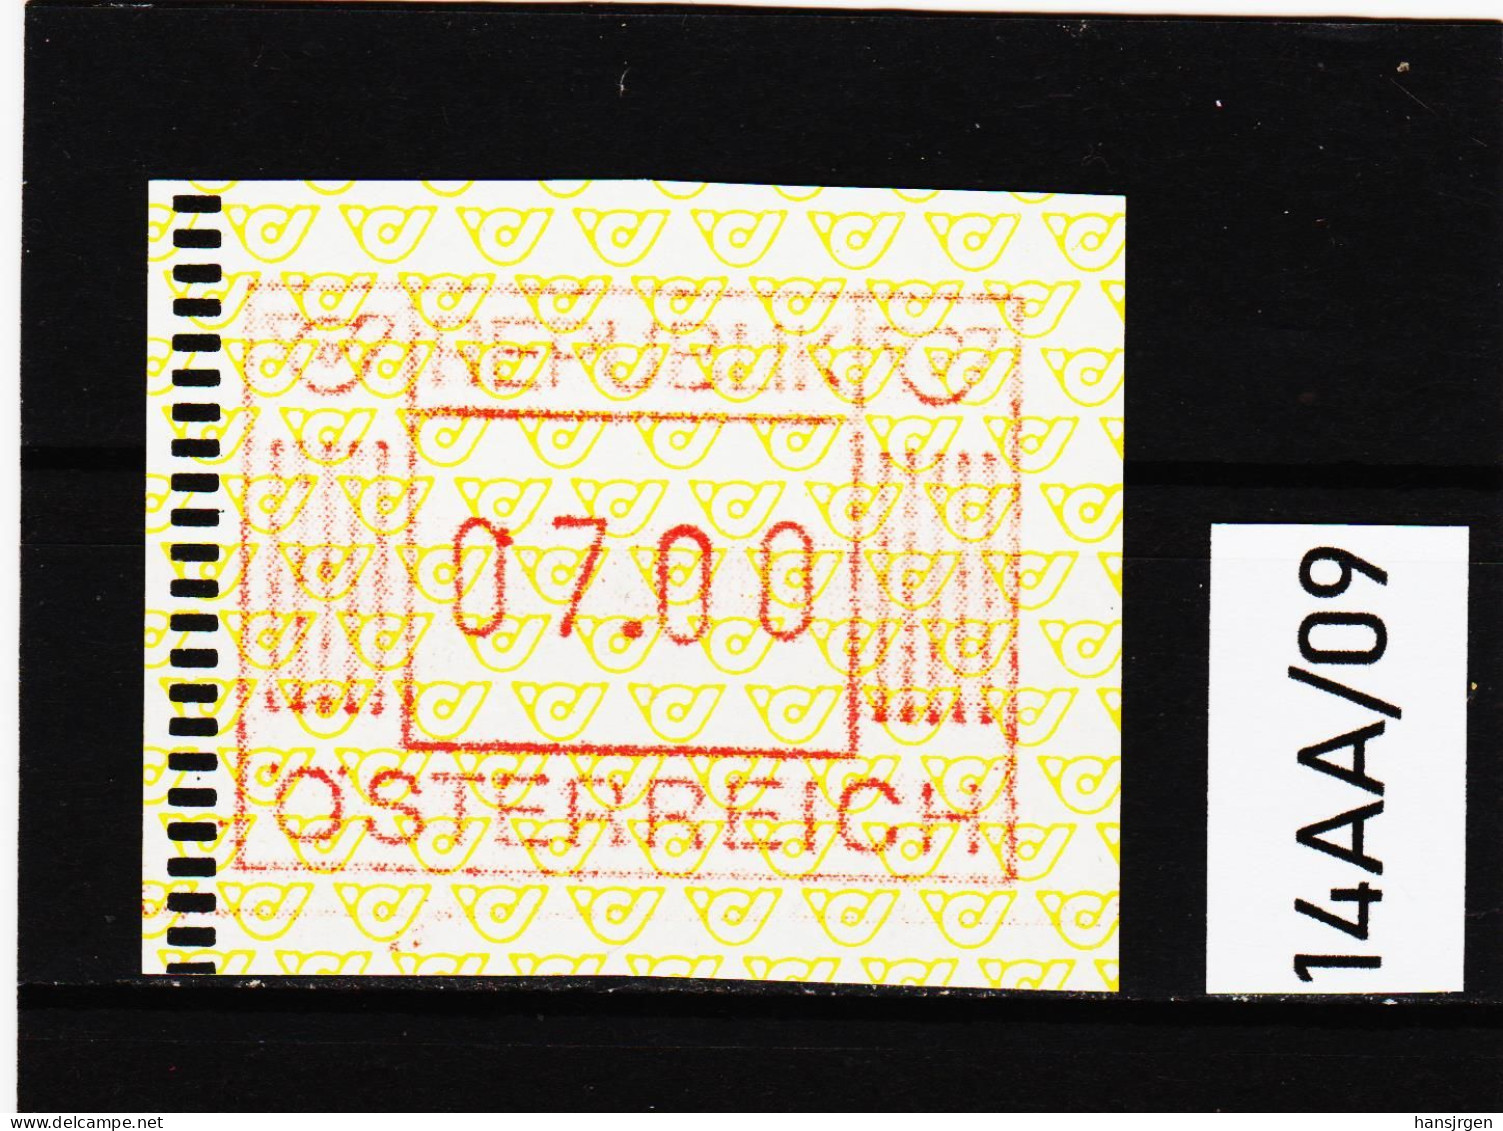 14AA/09 ÖSTERREICH 1983 AUTOMATENMARKEN 1. AUSGABE  7,00 Schilling   ** Postfrisch - Machine Labels [ATM]